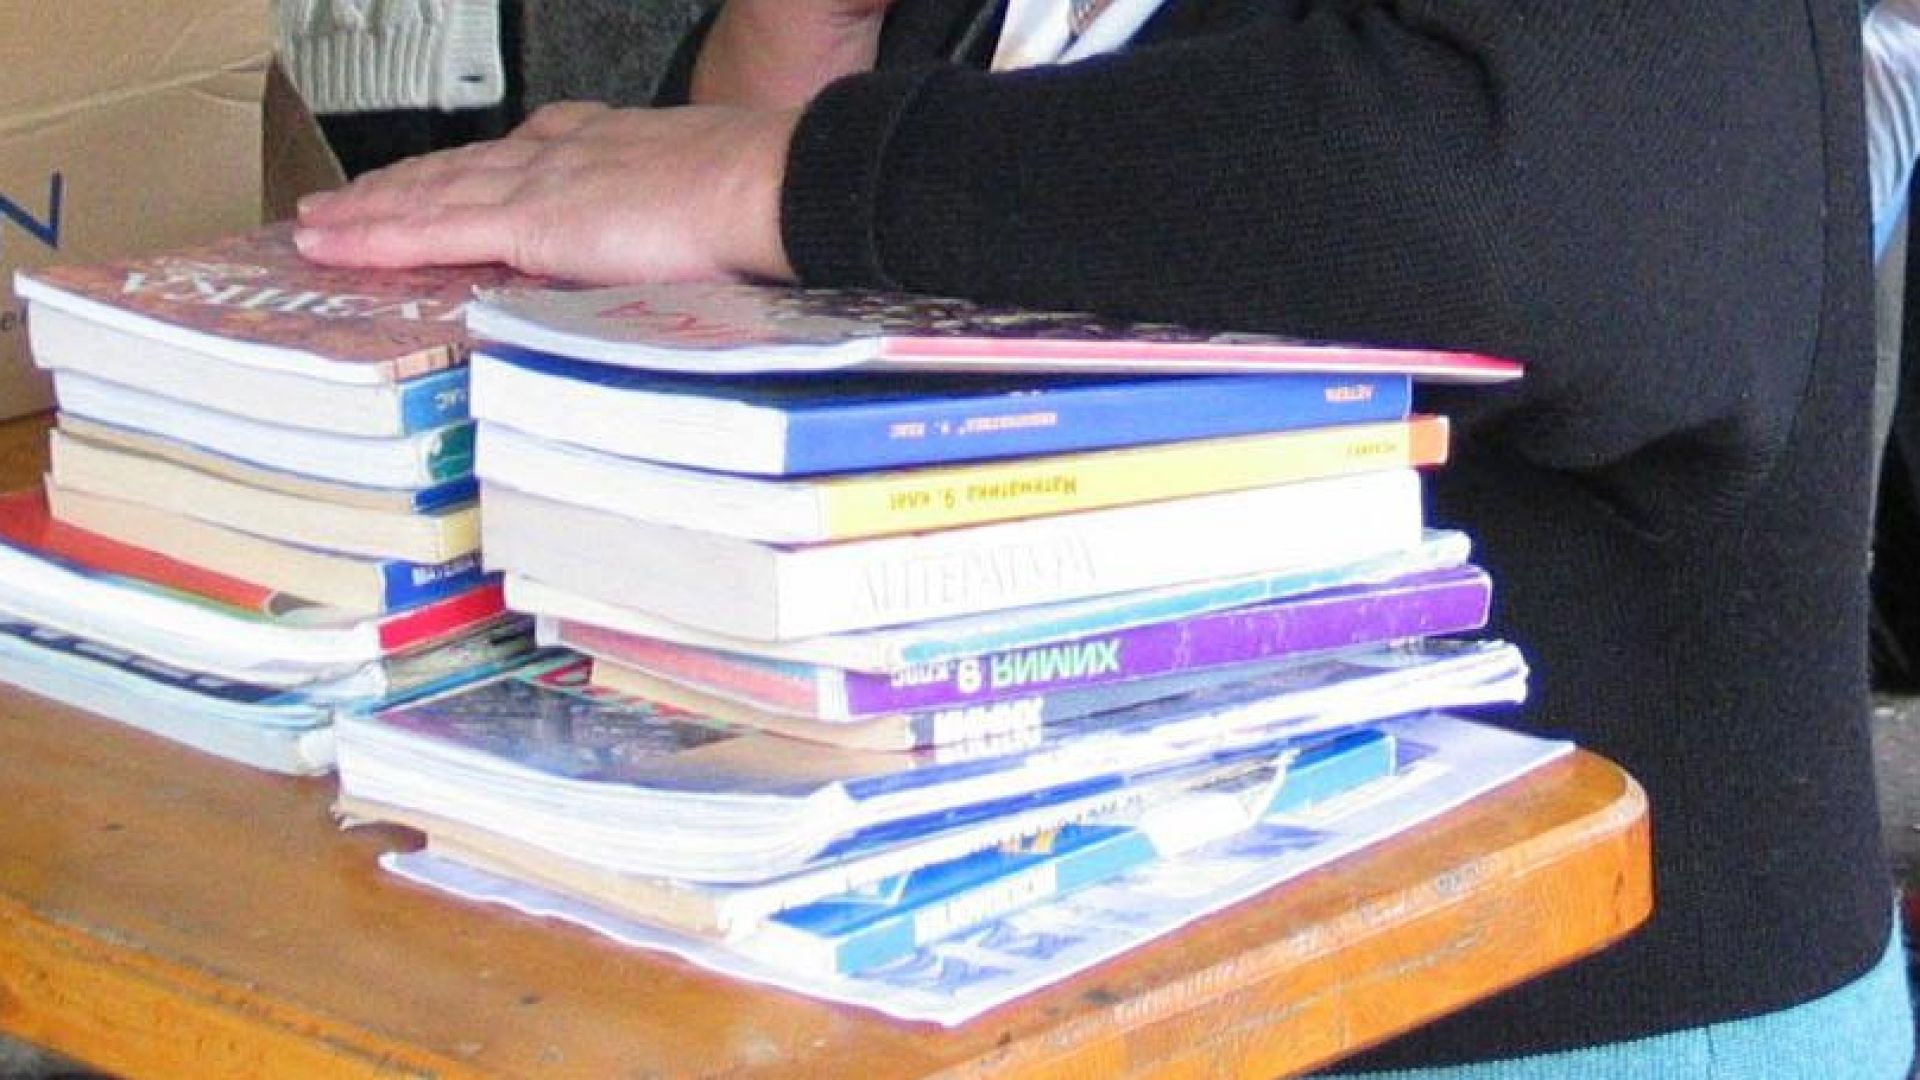 Хартиени или електронни учебници – деца и родители ще избират сами